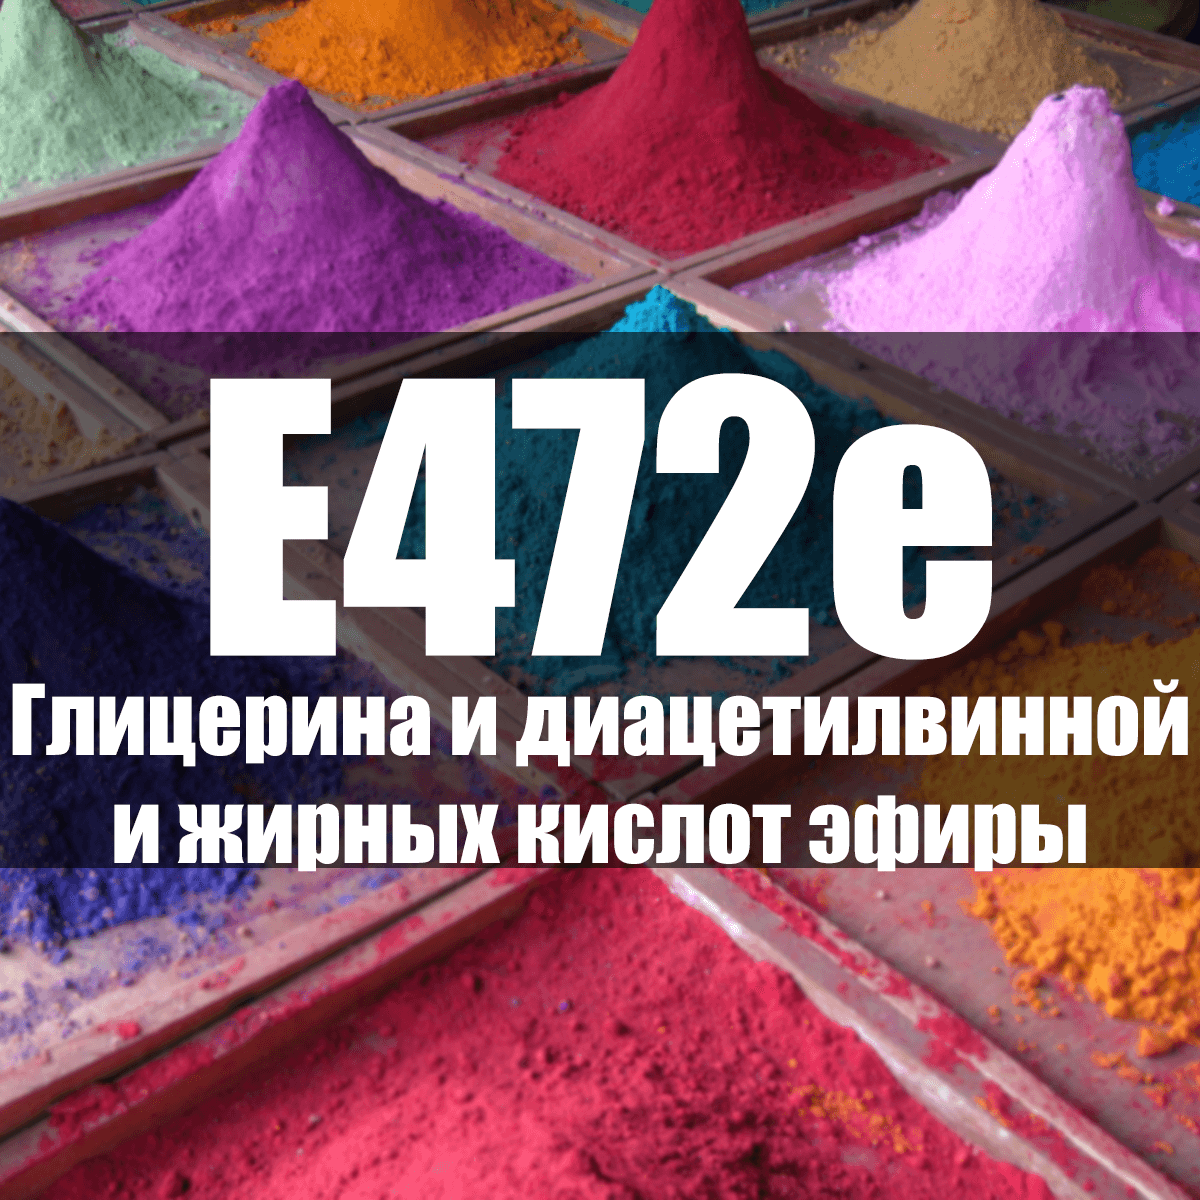 E472 Эфиры и глицериды кислот - описание пищевой добавки, польза и вред, использование